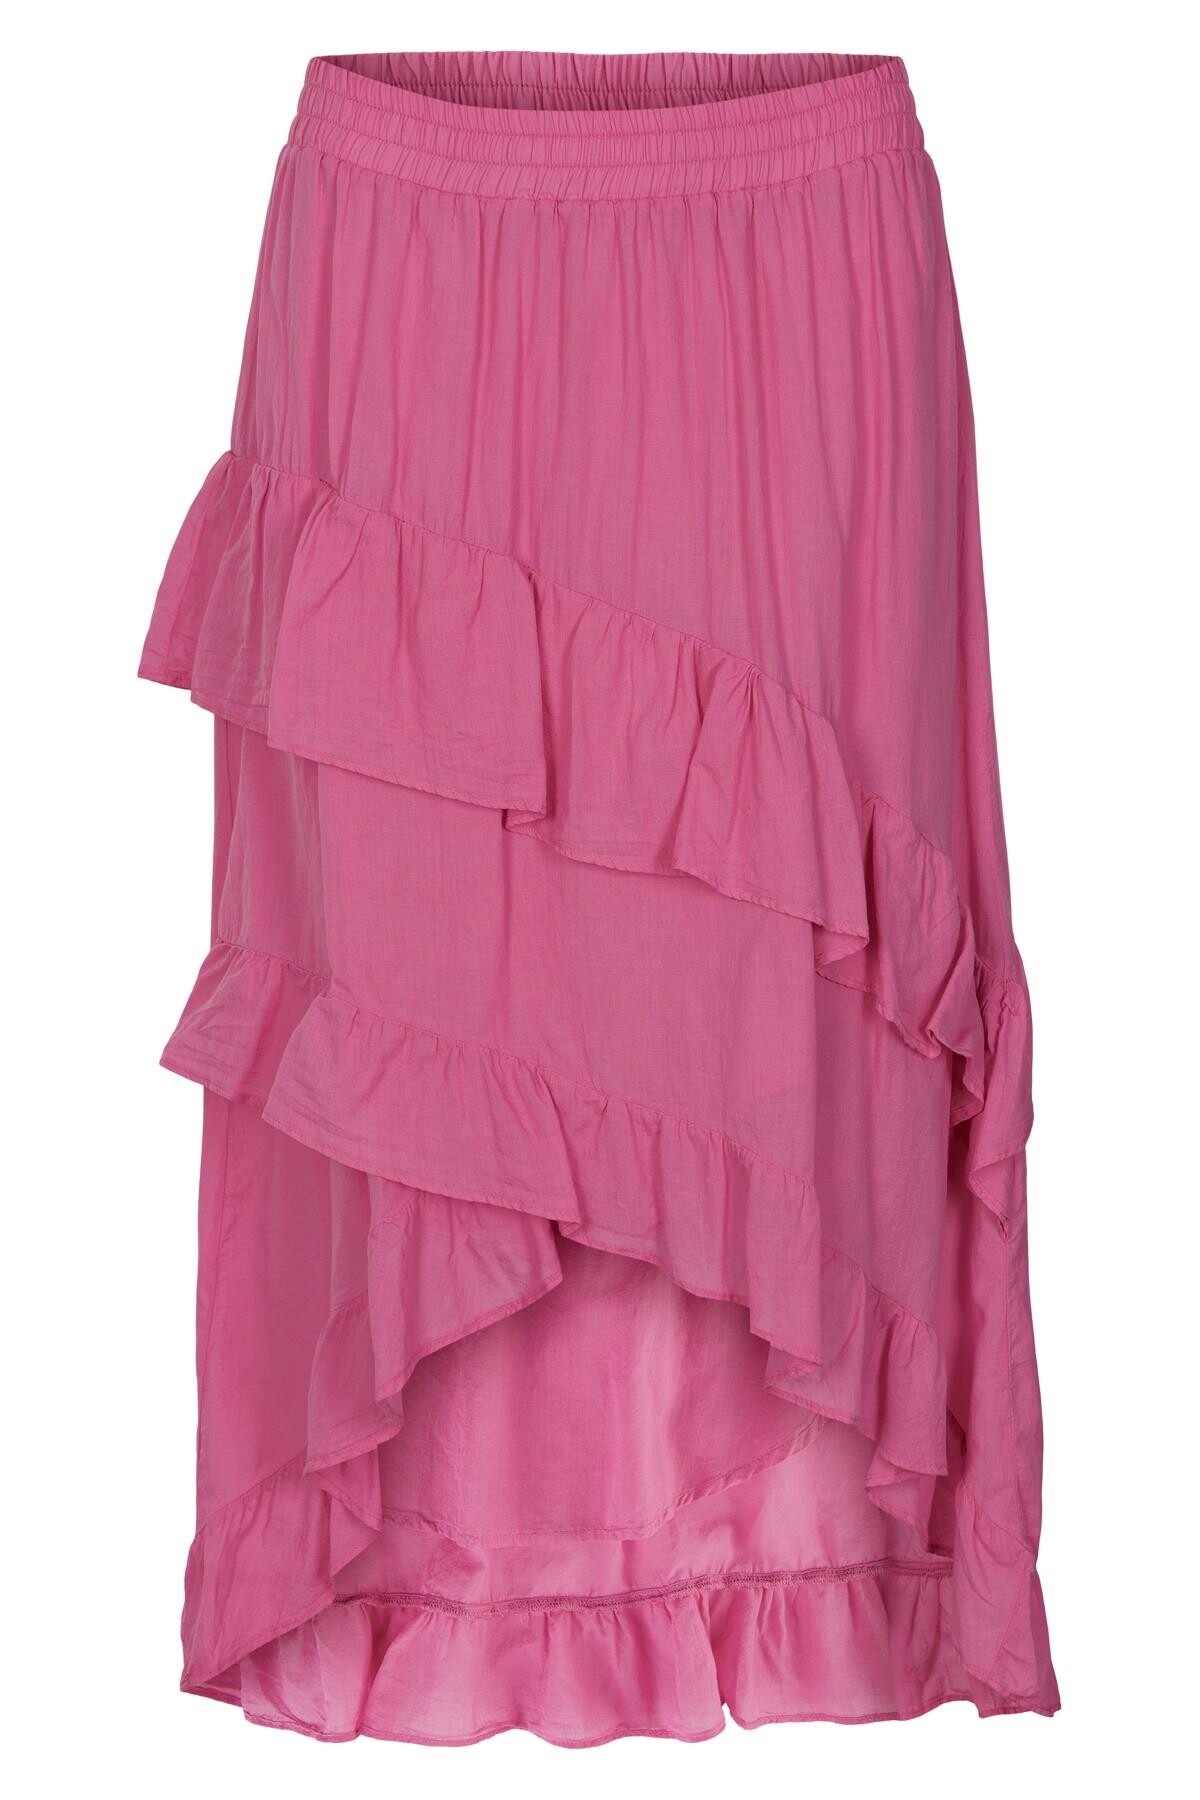 Se IN FRONT Santa Maria Nederdel, Farve: Pink, Størrelse: XL, Dame hos Infront Women